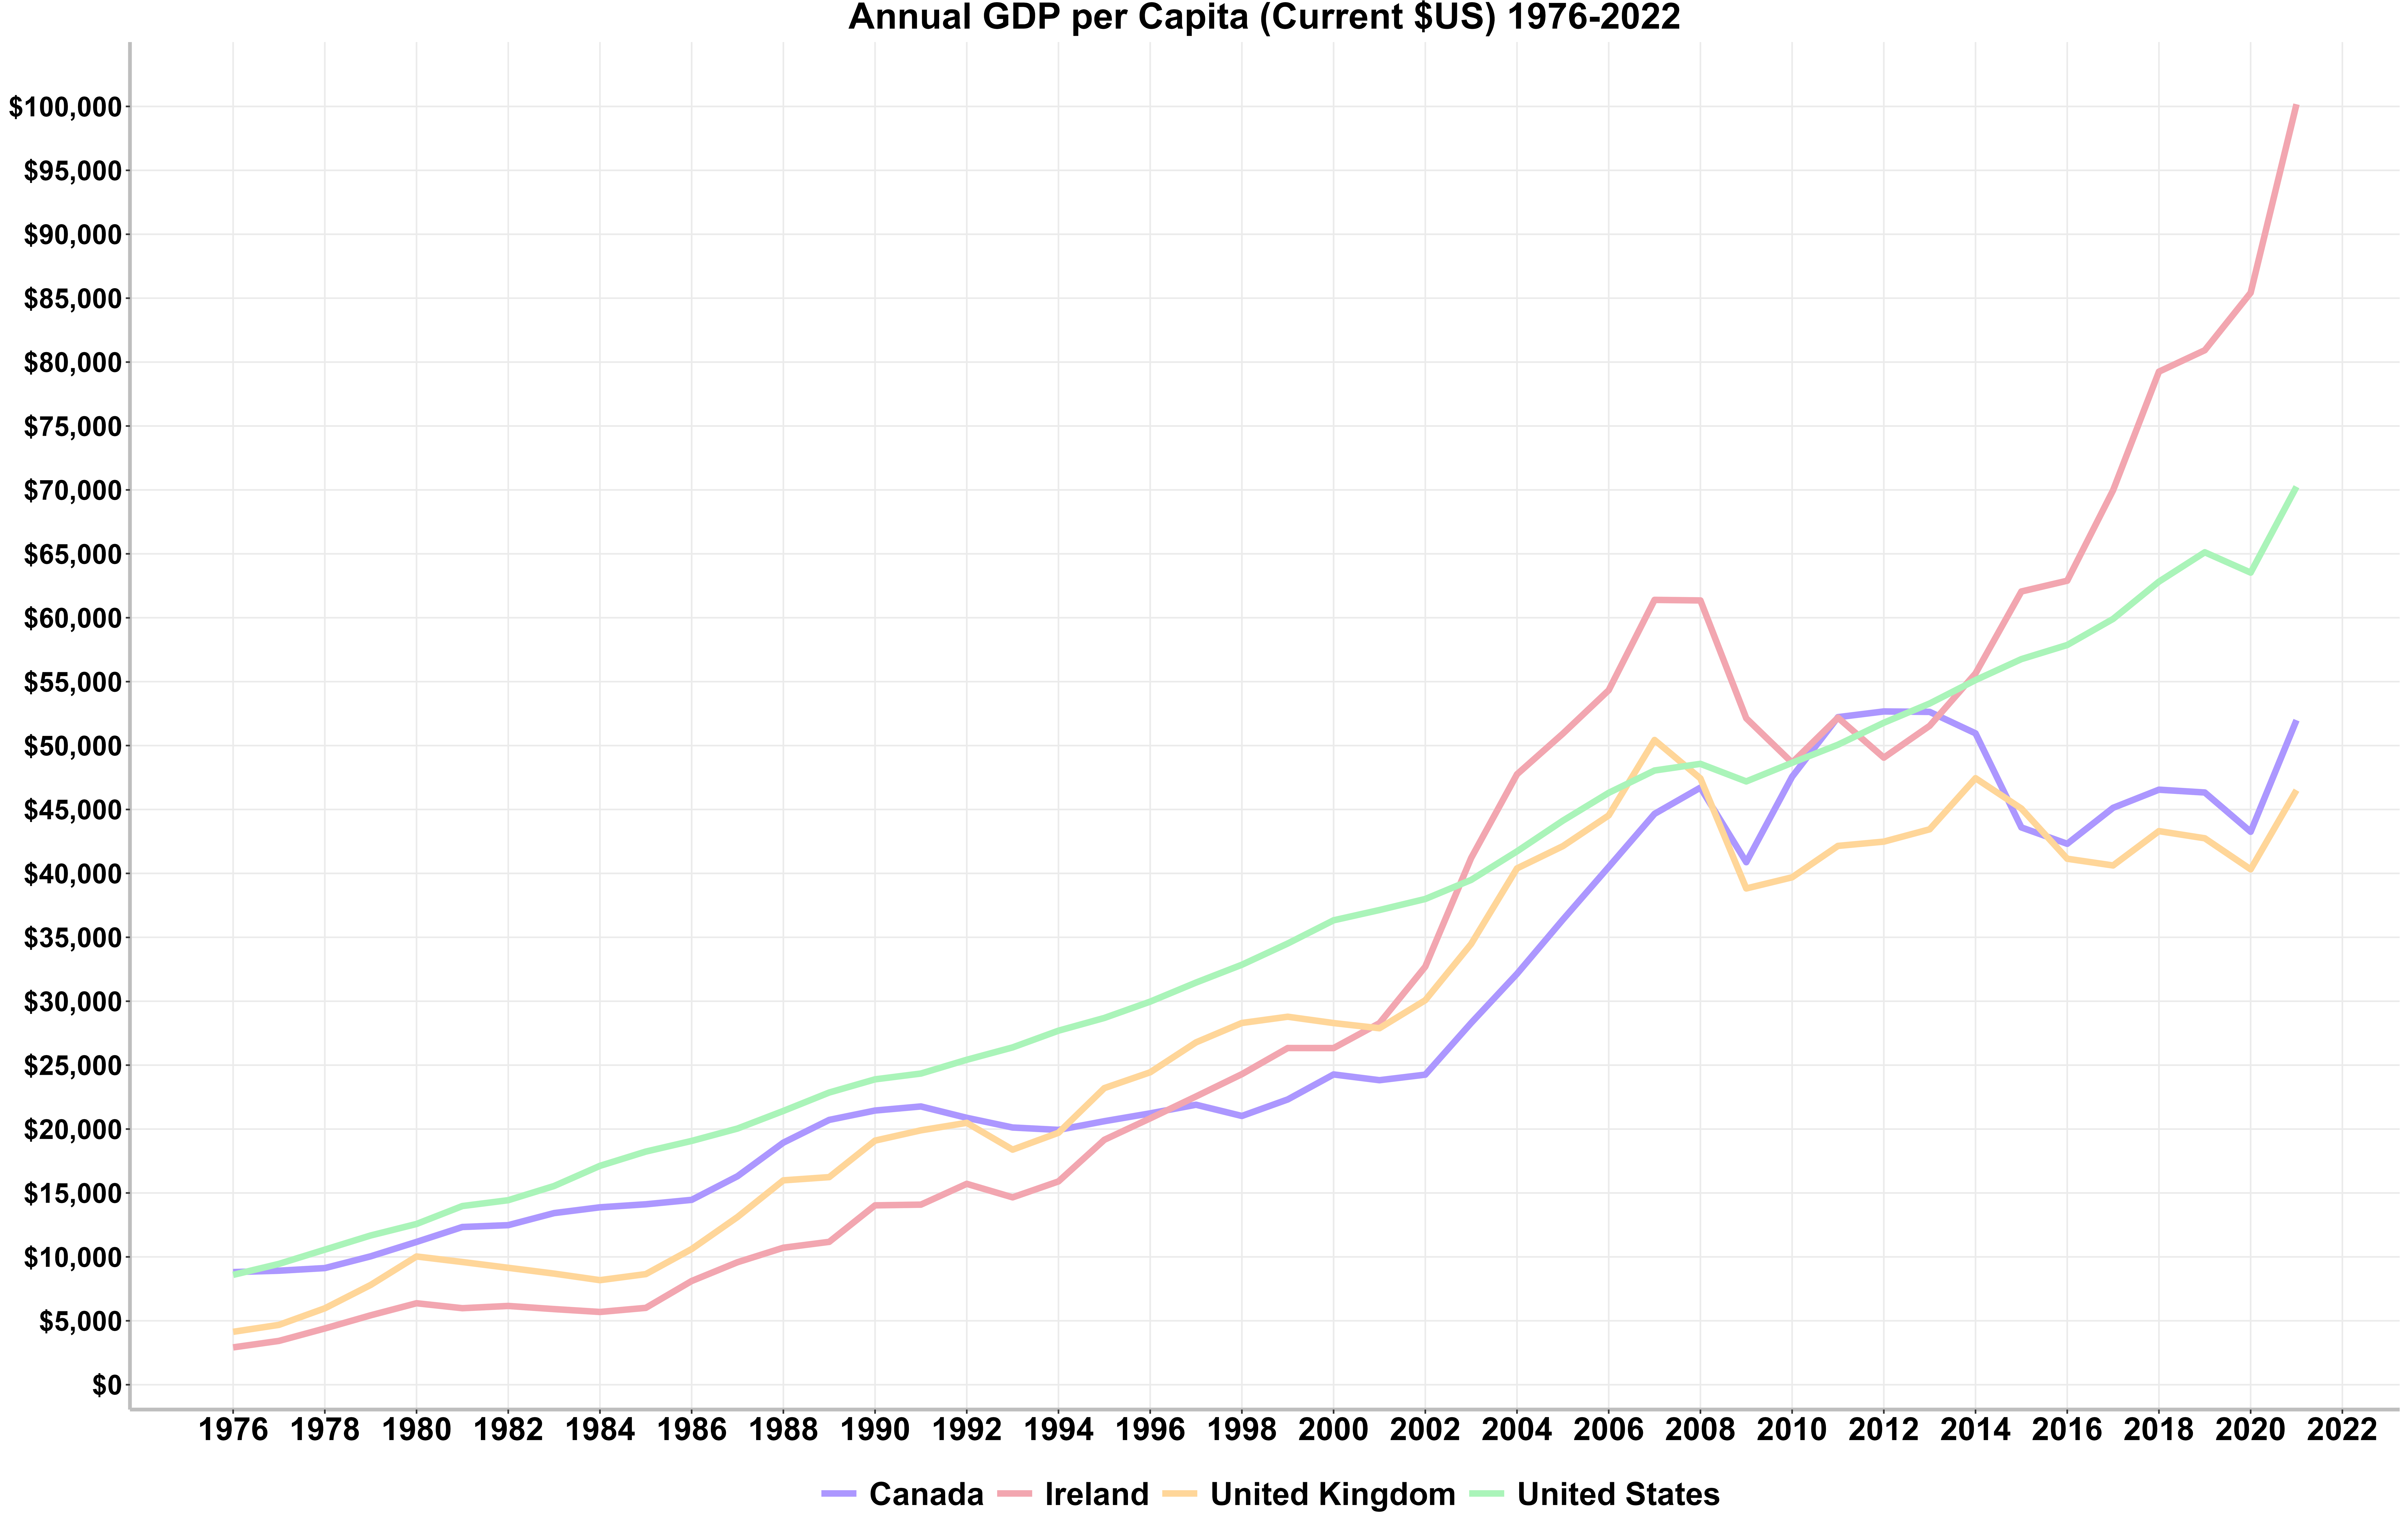 GDP per capita in current USD 1976-2022